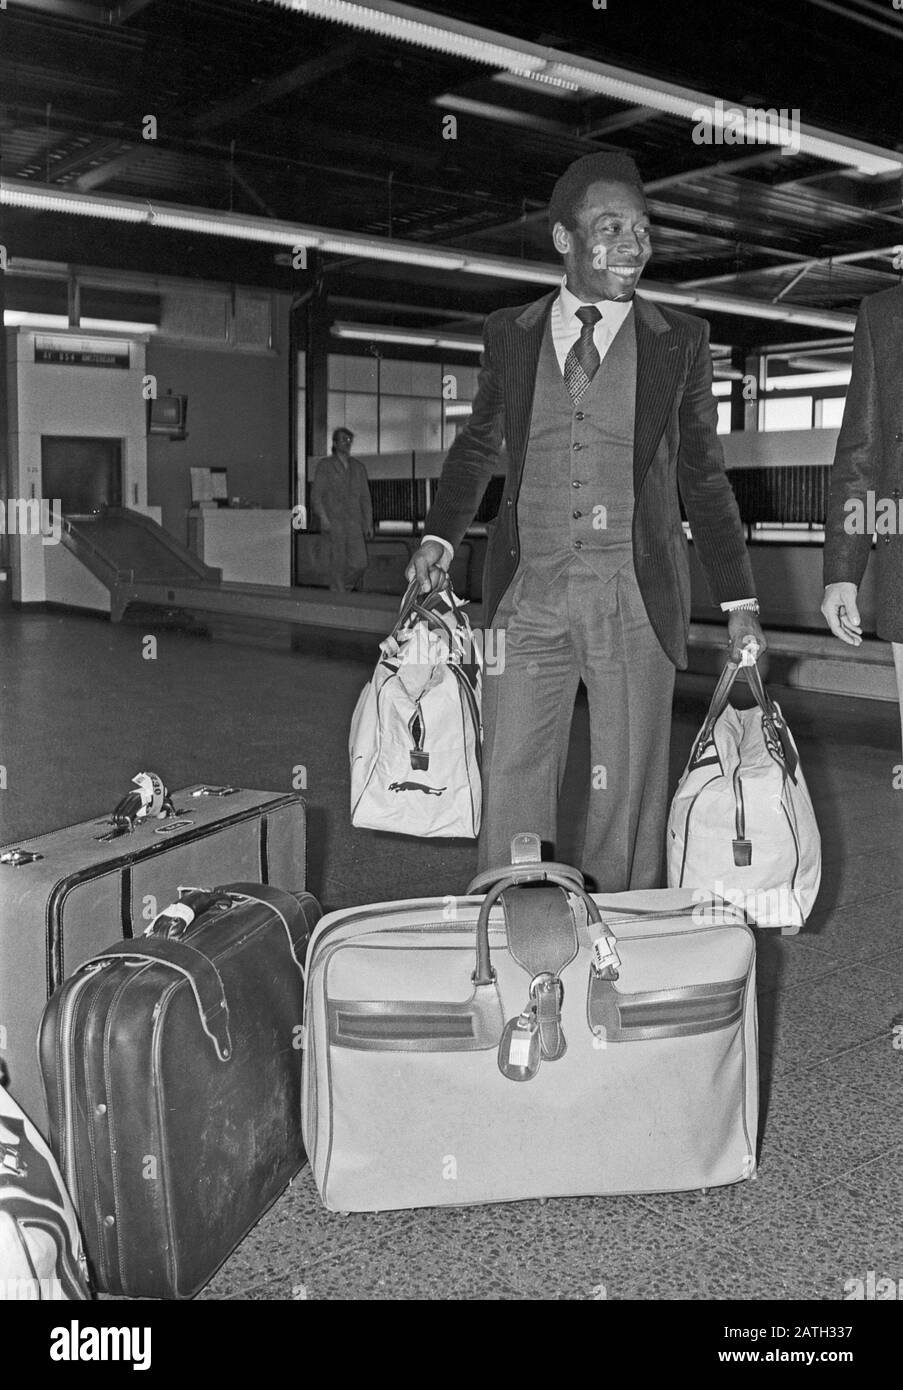 Pele, brasilianischer Fußballspieler, bei der Ankunft am Flughafen Hamburg, Deutschland 1981. Brazilian football player Pele at the arrival at Hamburg airport, Germany 1981. Stock Photo